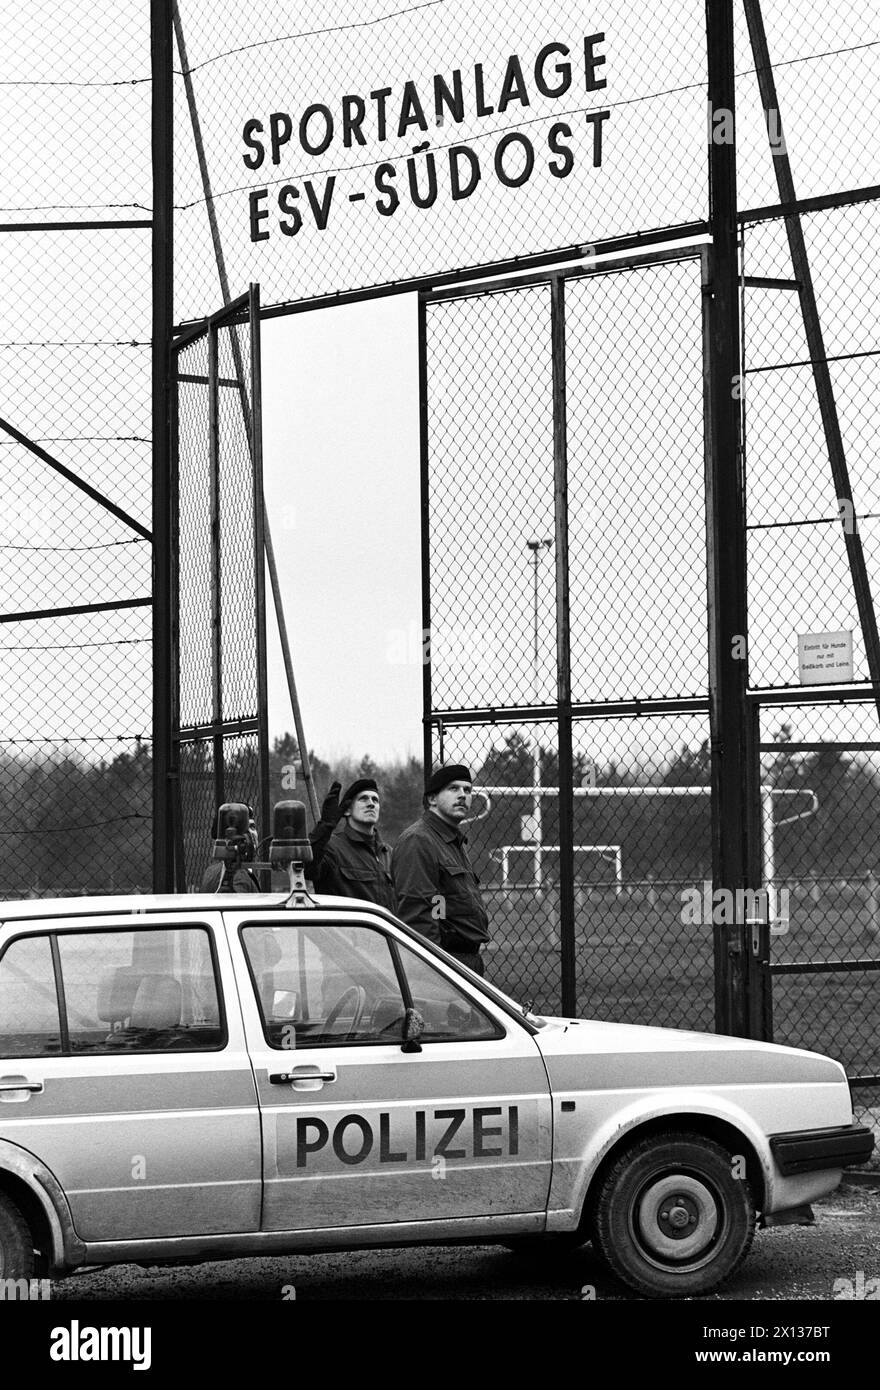 Wien am 23. Dezember 1990: Die 8-jährige Nicole Strau wurde tot hinter der Sportanlage Laaer Berg in Wien aufgefunden Favoriten. Im Bild: Eintritt in die Sportanlage ESV-Suedost am Laaer Berg. - 19901223_PD0007 - Rechteinfo: Rechte verwaltet (RM) Stockfoto